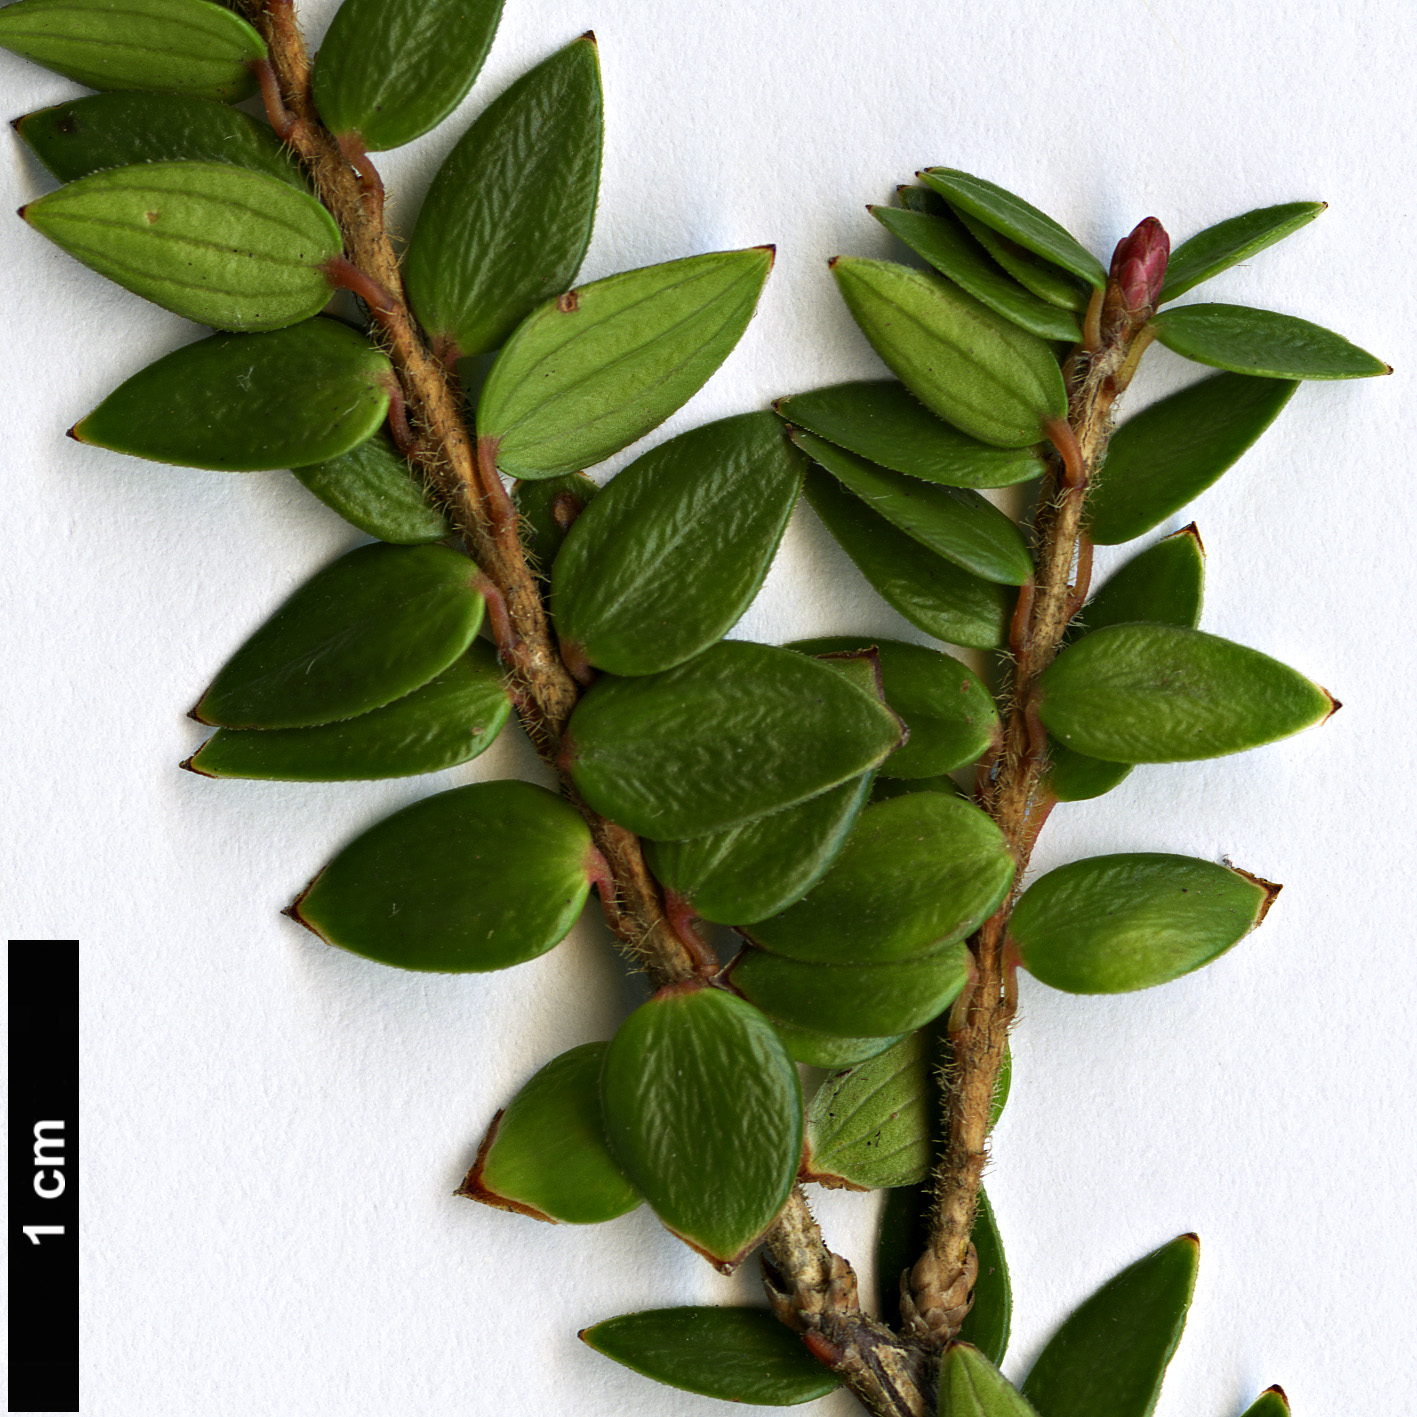 High resolution image: Family: Ericaceae - Genus: Trochocarpa - Taxon: cunninghammi